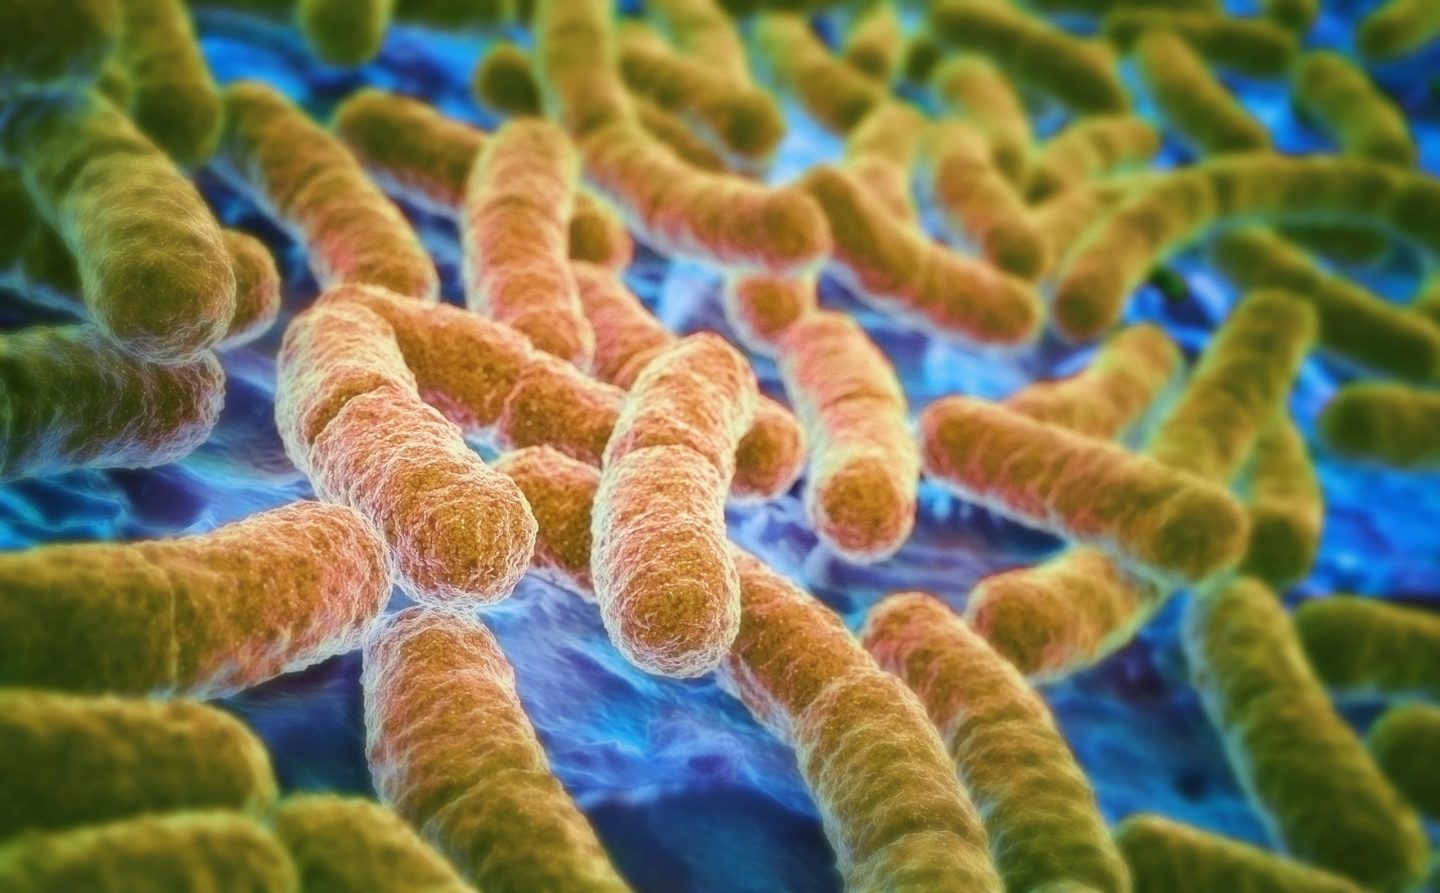   Một số triệu chứng như tiêu chảy, đau bụng và sốt do nhiễm khuẩn E.coli  